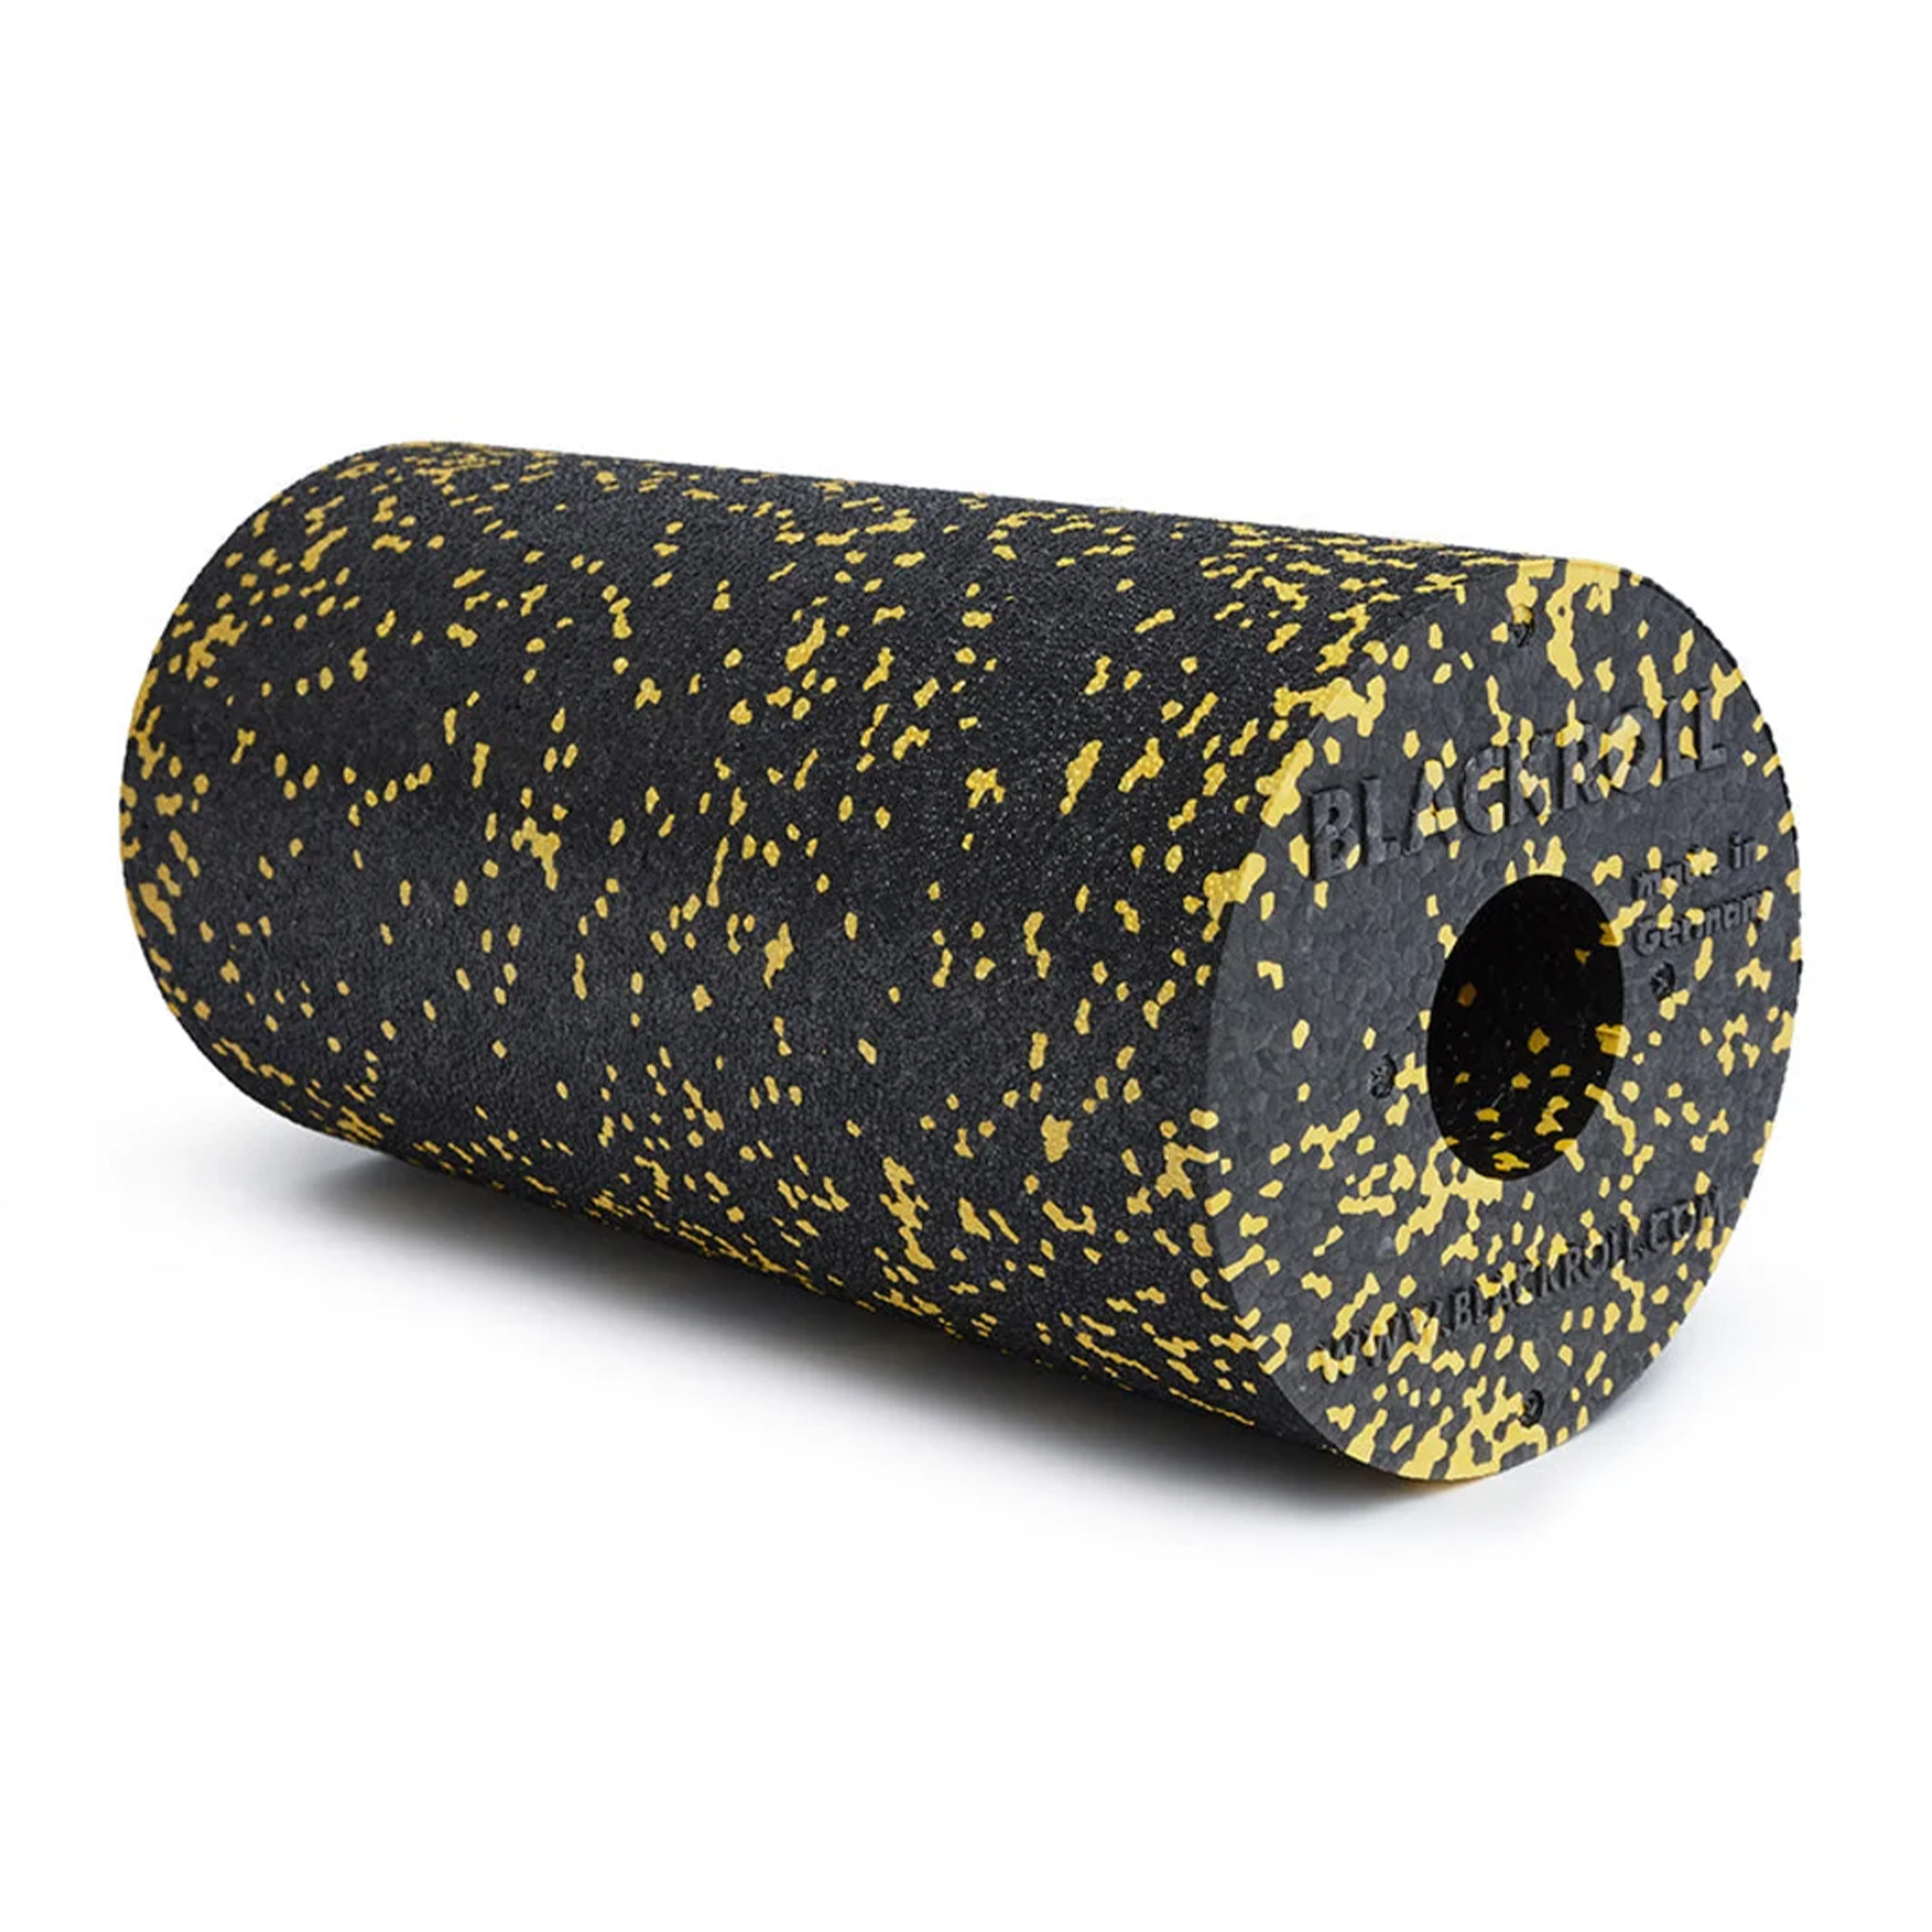 Blackroll Standard Foam Roller - Sort/gul - 30 x 15 cm